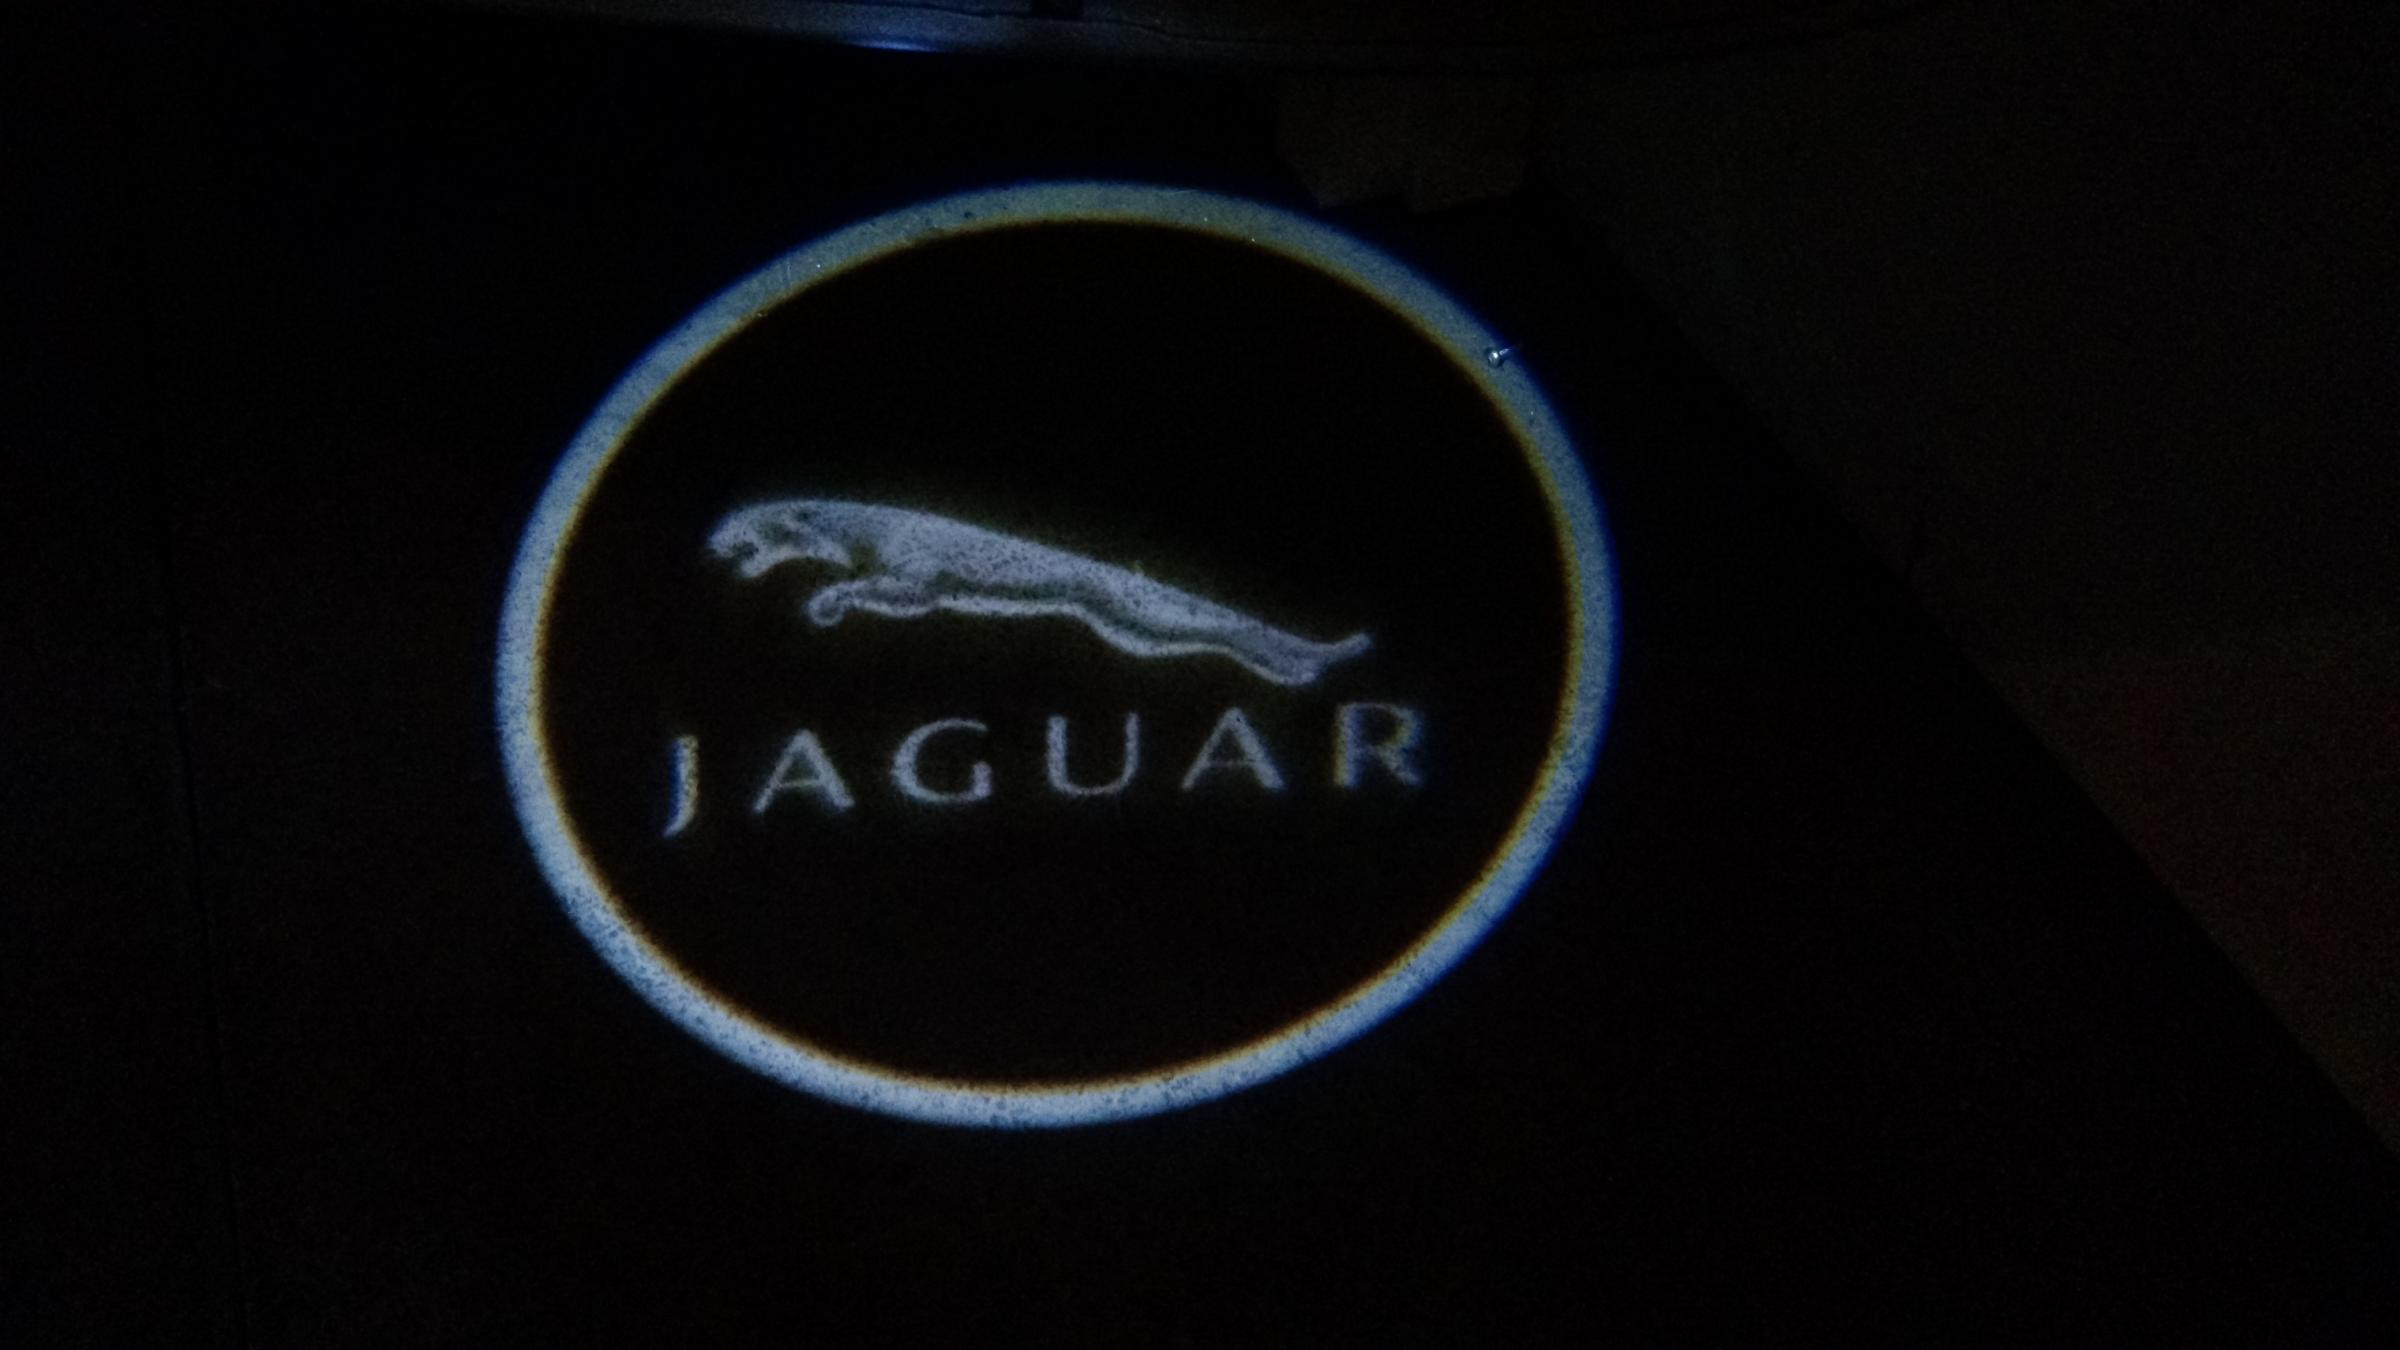 puddle lights for XK's - Page 7 - Jaguar Forums - Jaguar Enthusiasts Forum